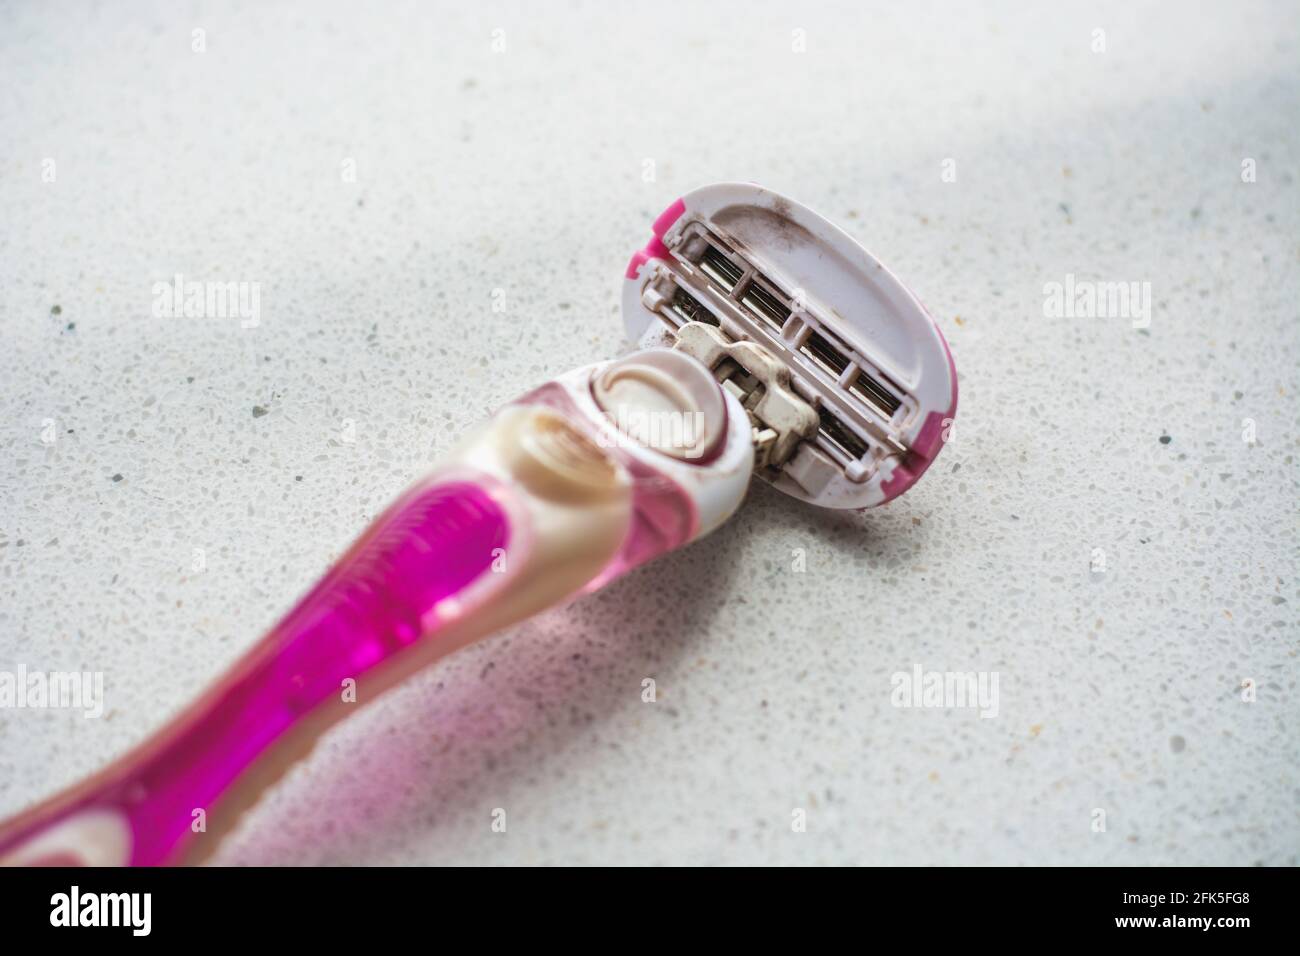 Afeitadora para mujer rosa, bien usada, sucia y oxidada. Higiene personal y concepto antisanitario Foto de stock